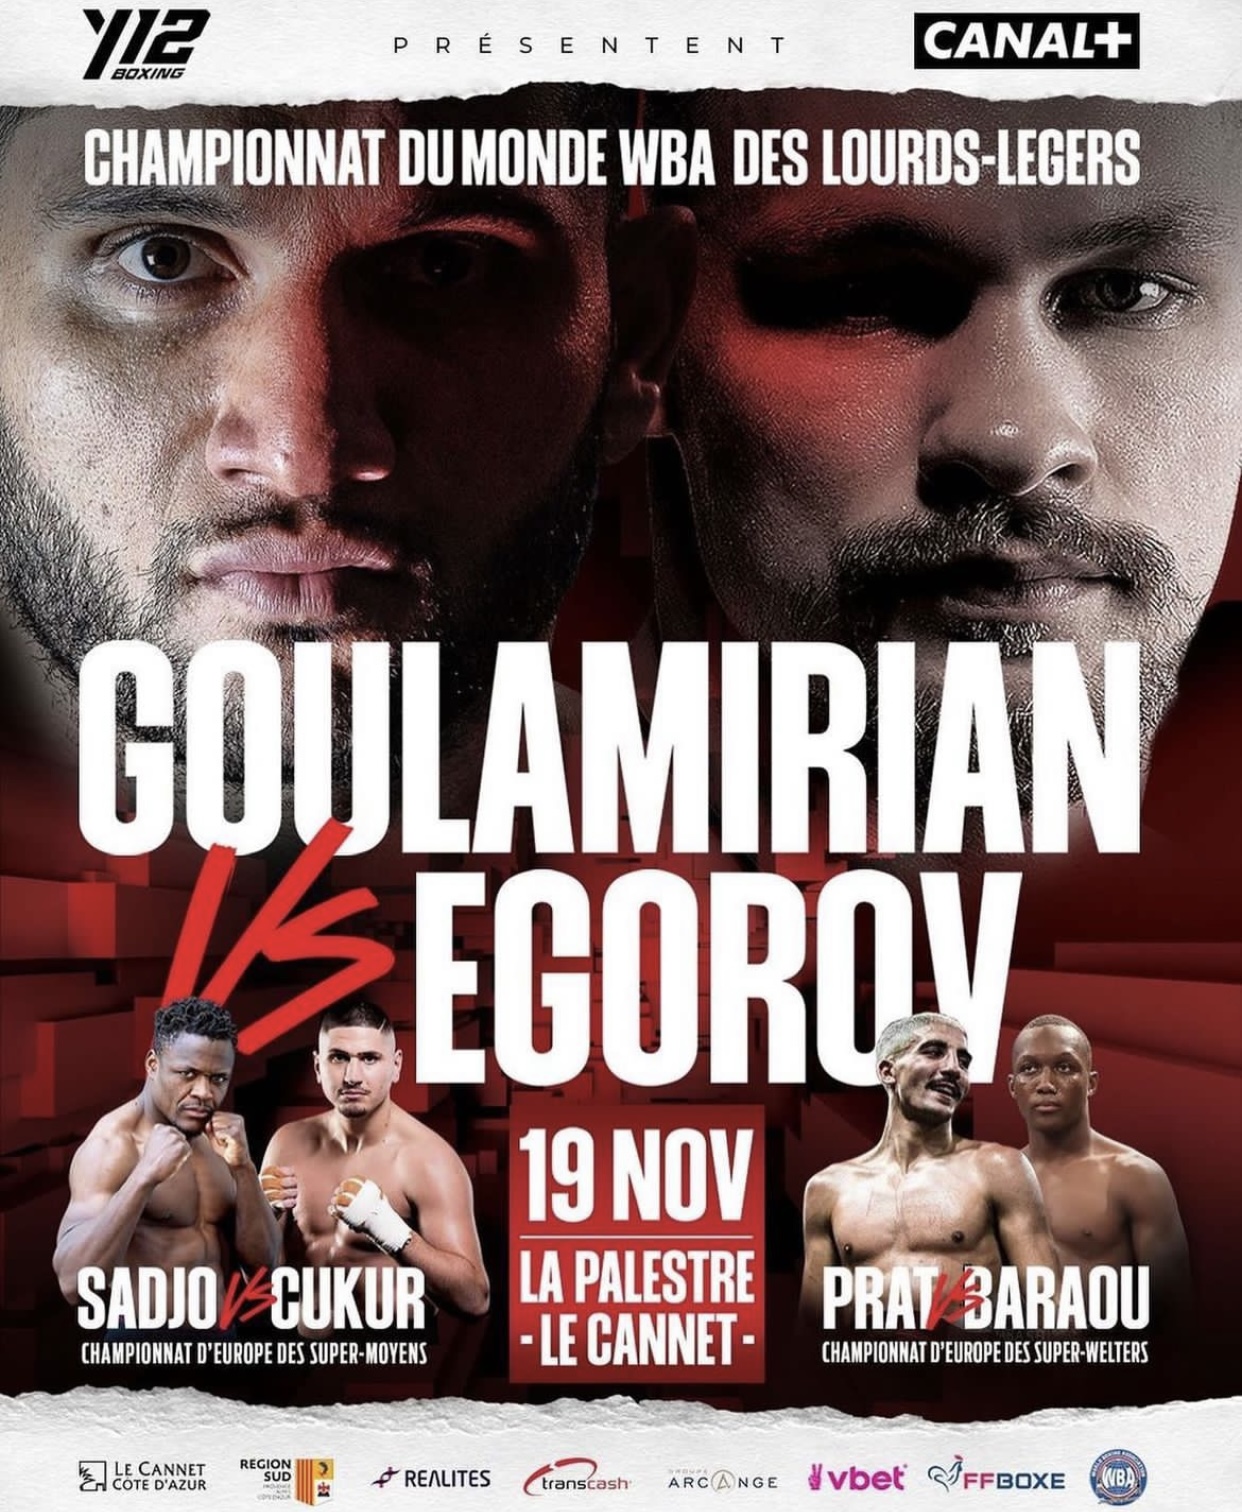 Goulamirian-Egorov set for Nov. 19